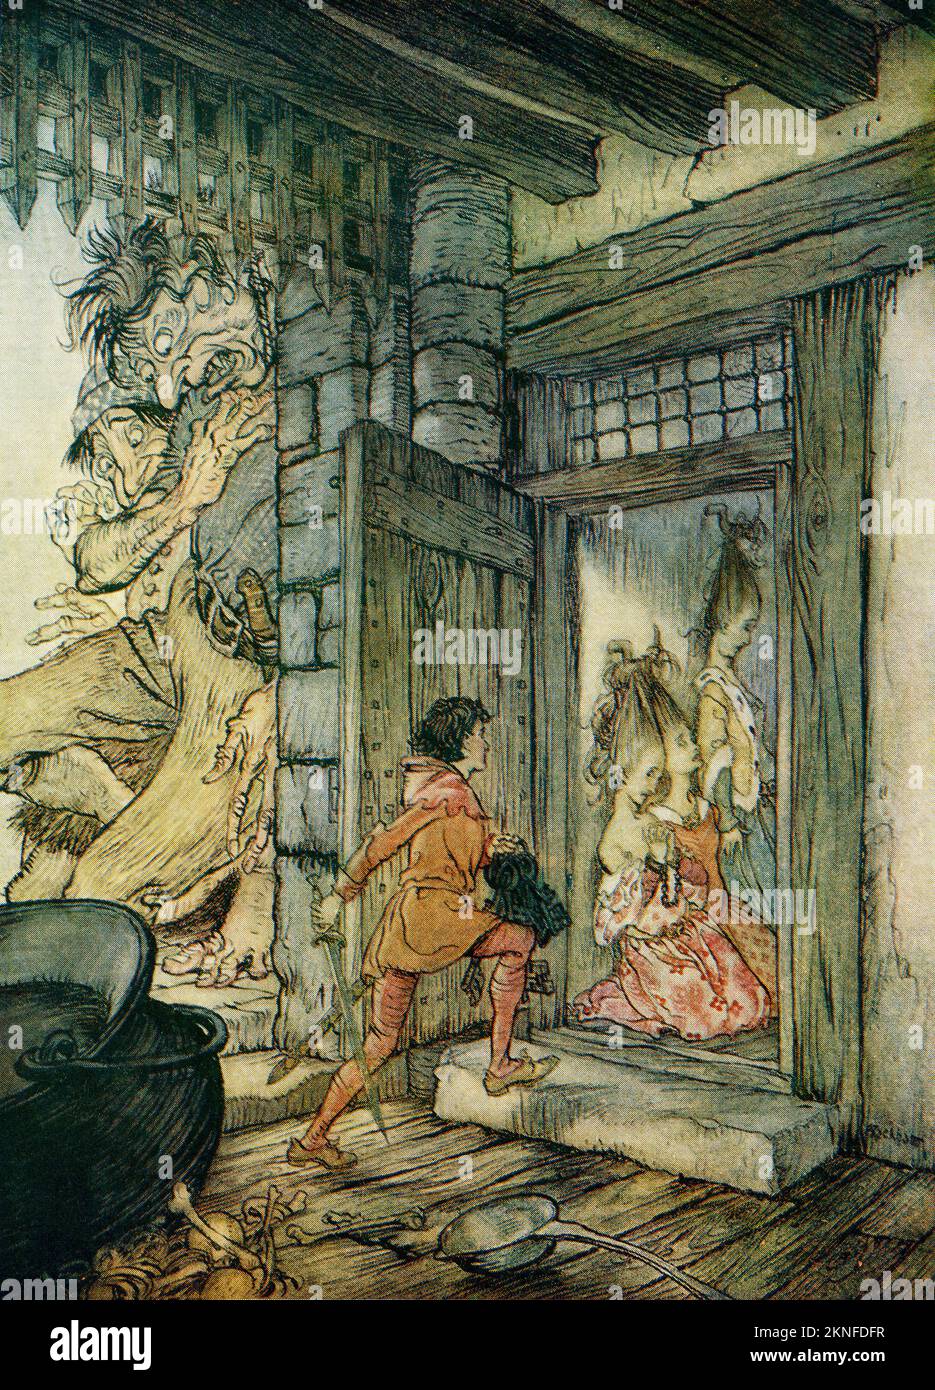 Prendendo le chiavi del castello Jack sbloccato tutte le porte. Illustrazione a Jack il Giant Killer dal libro Italiano Fairy Tales Retold di F.A. Acciaio con illustrazioni di Arthur Rackham, pubblicato nel 1927. Foto Stock